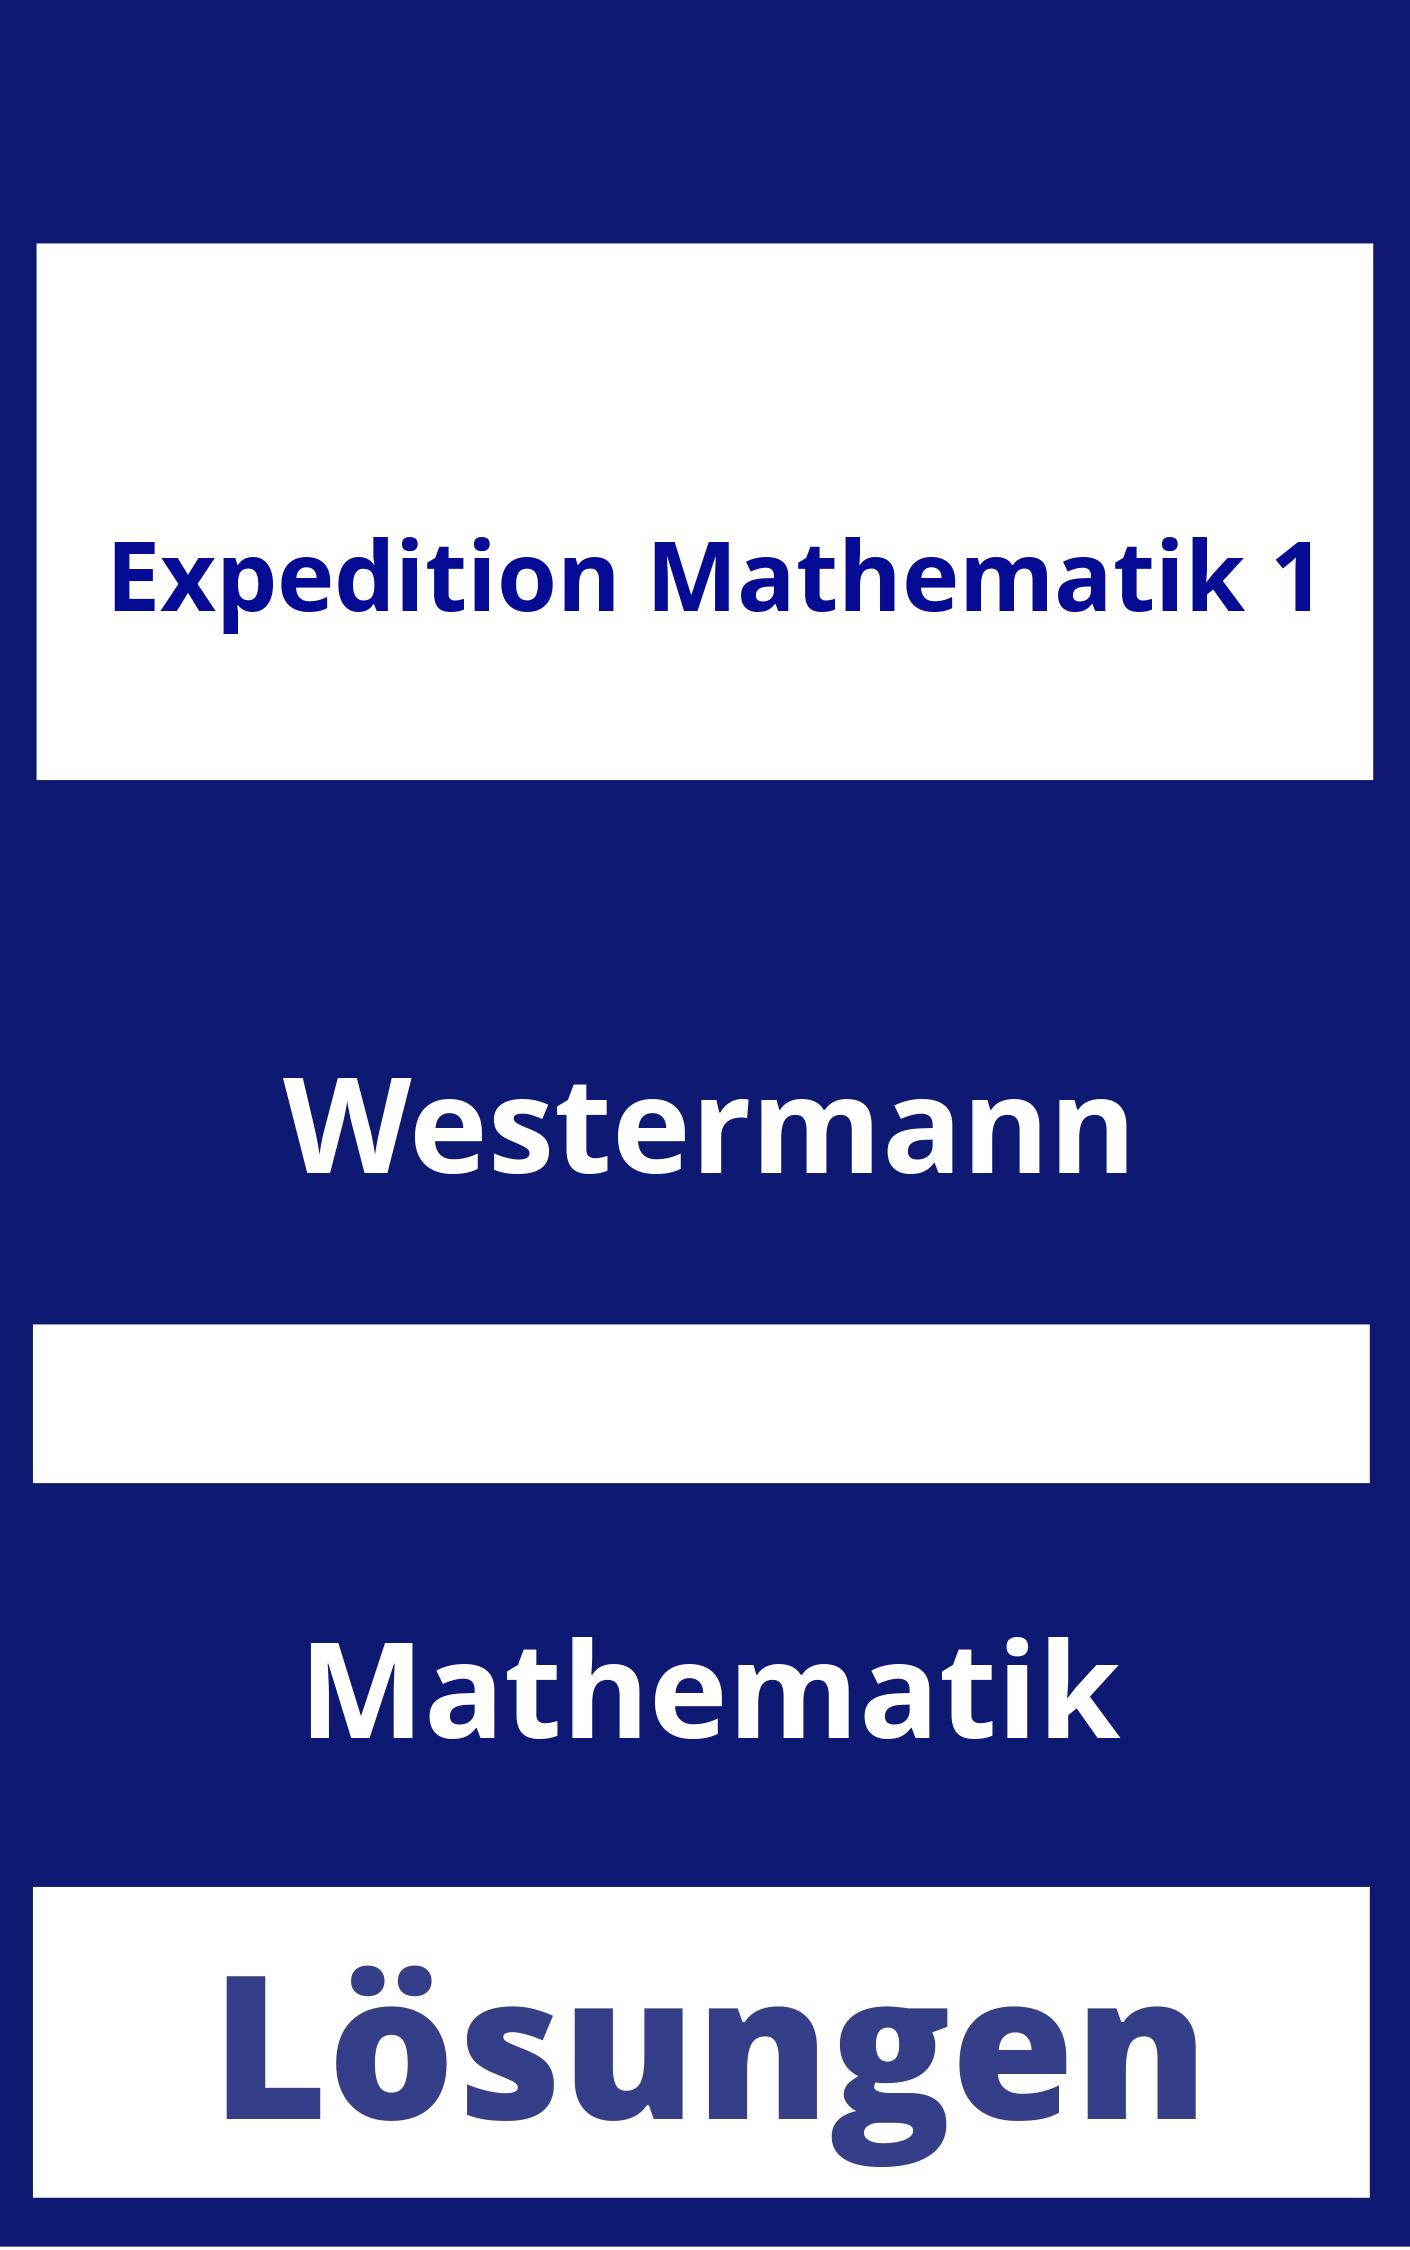 Expedition Mathematik 1 Lösungen PDF